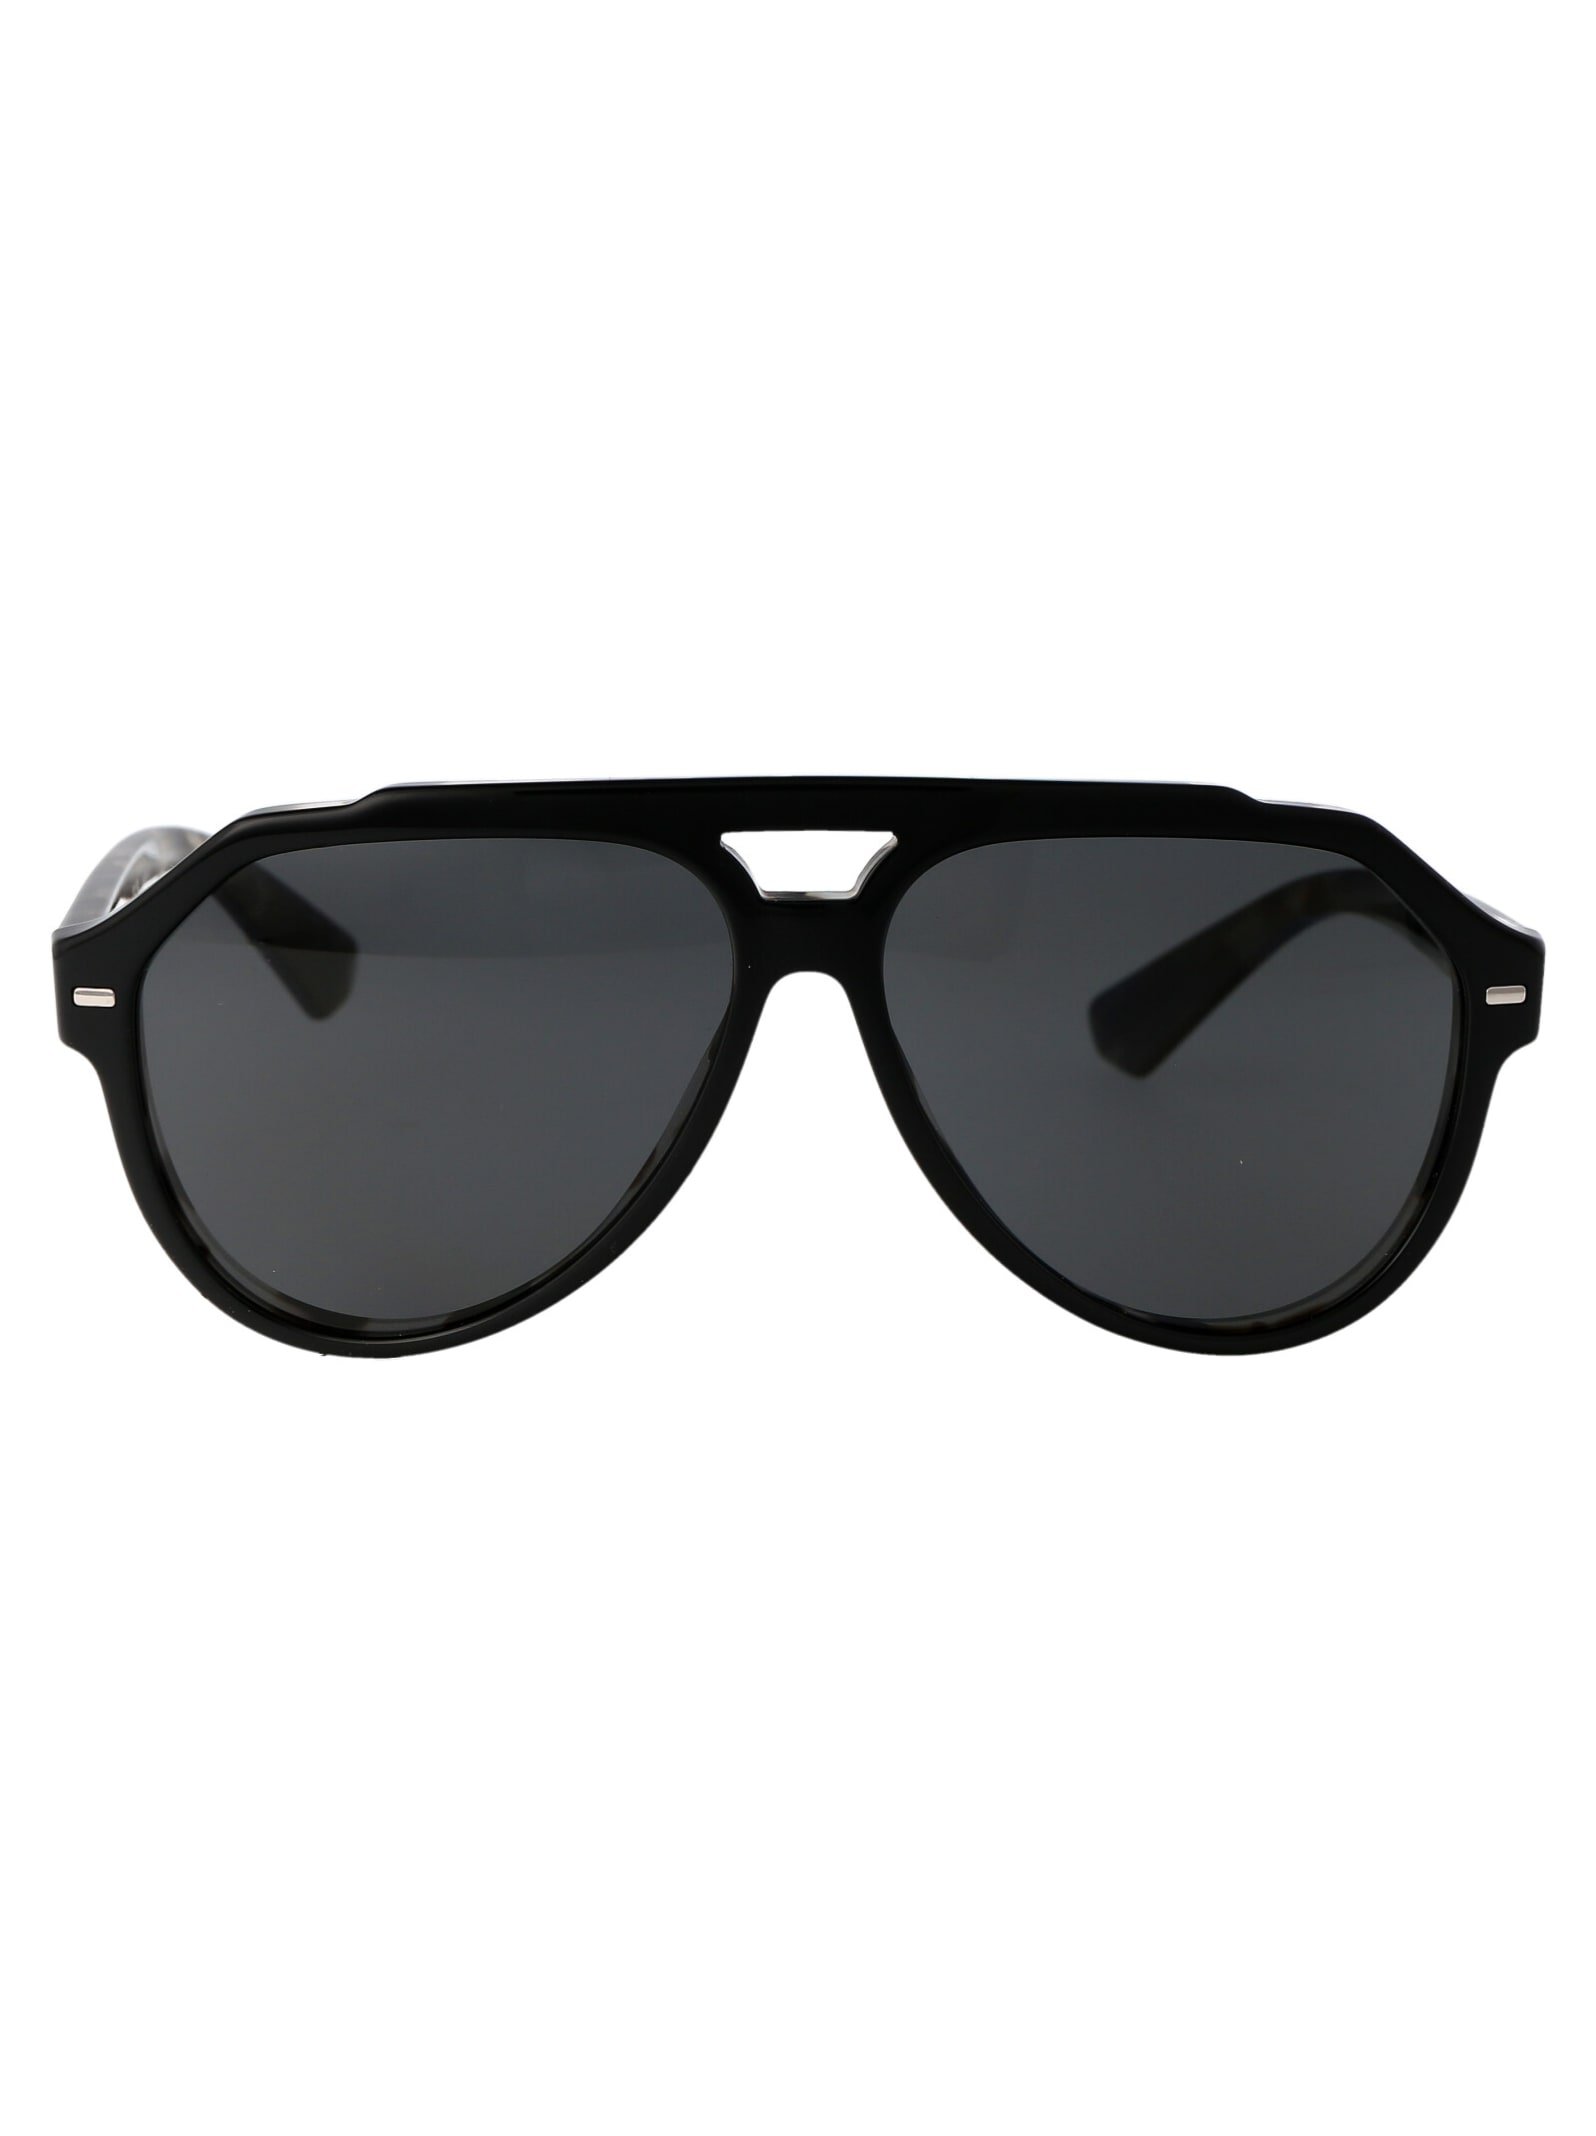 Dolce &amp; Gabbana Eyewear 0dg4452 Sunglasses In 340387 Black On Grey Havana